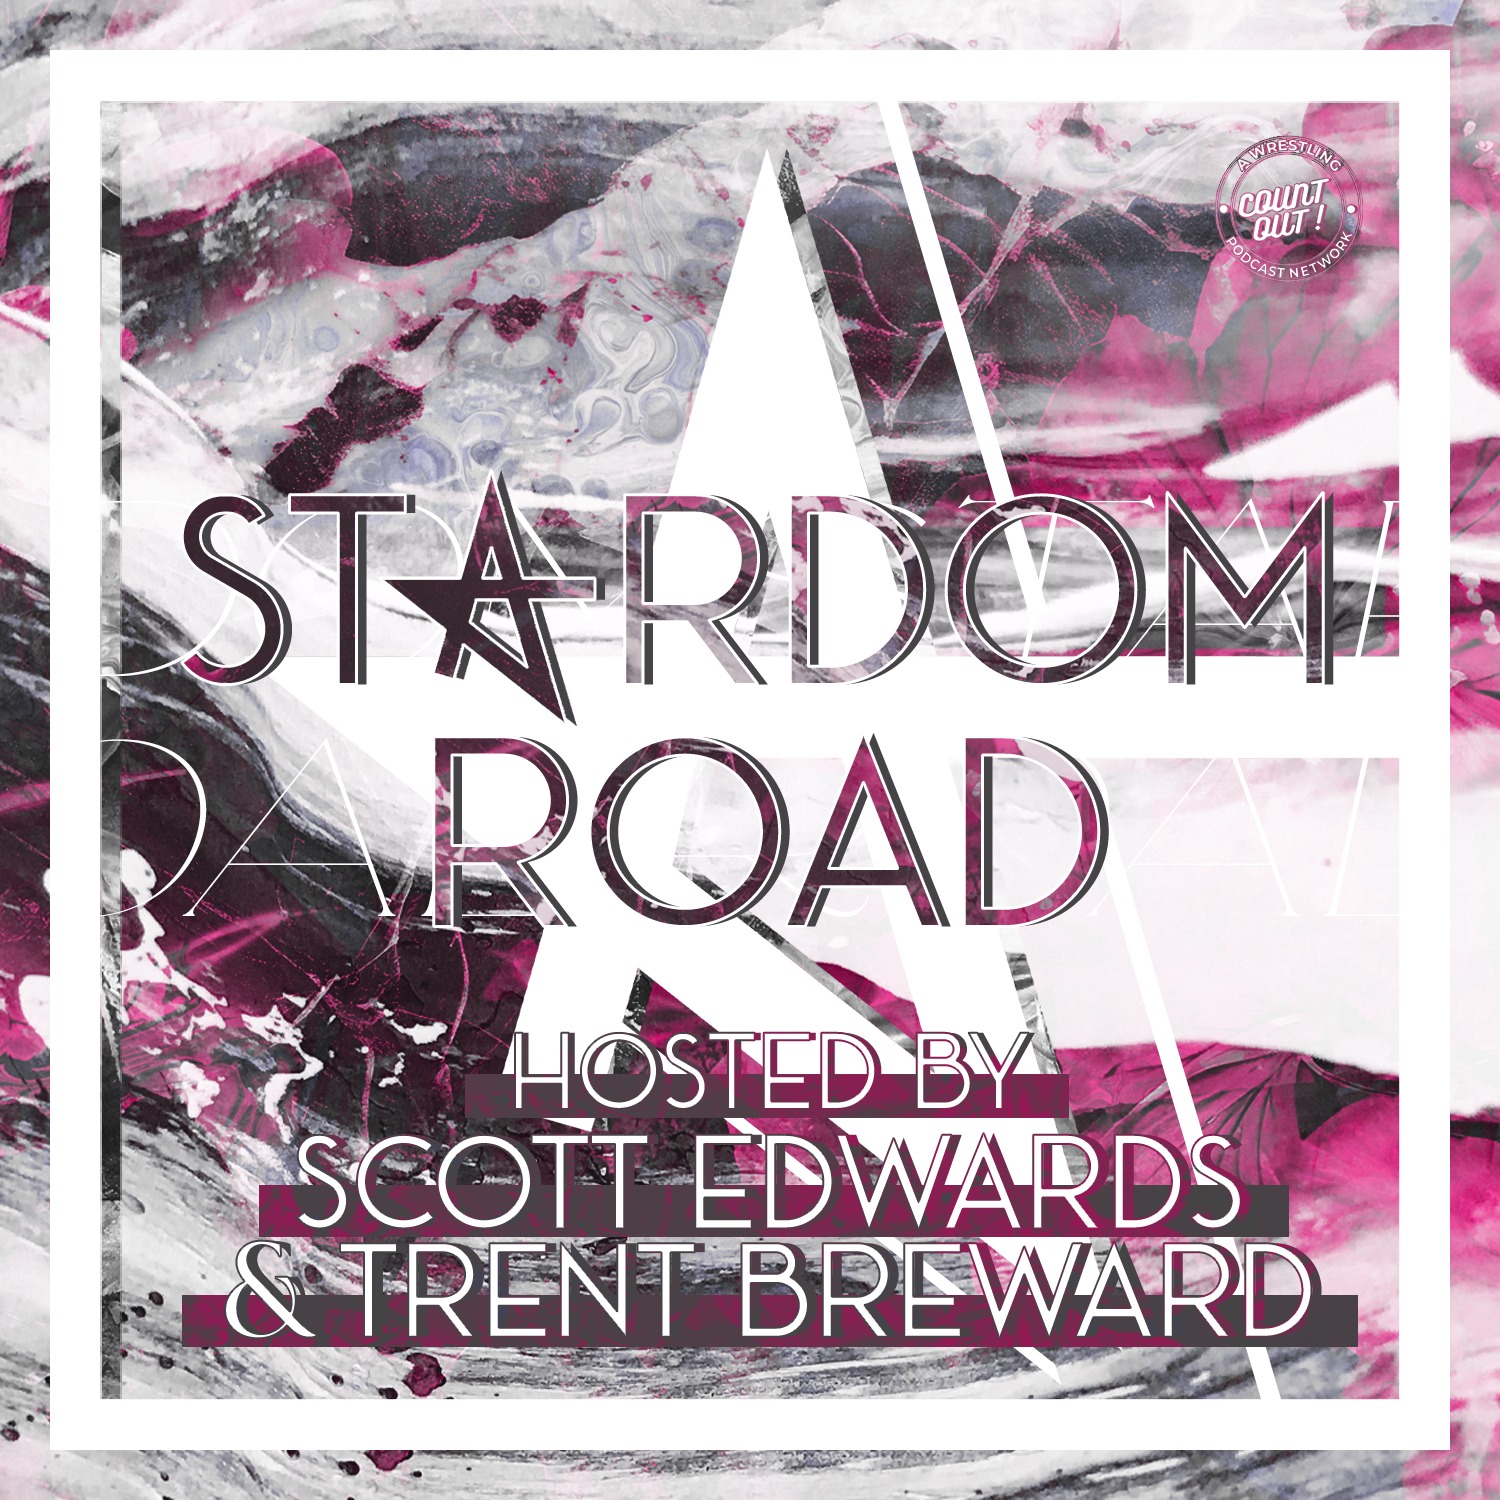 Stardom Road 38: Utami Hayashishita’s World of Stardom Title Reign - Part I